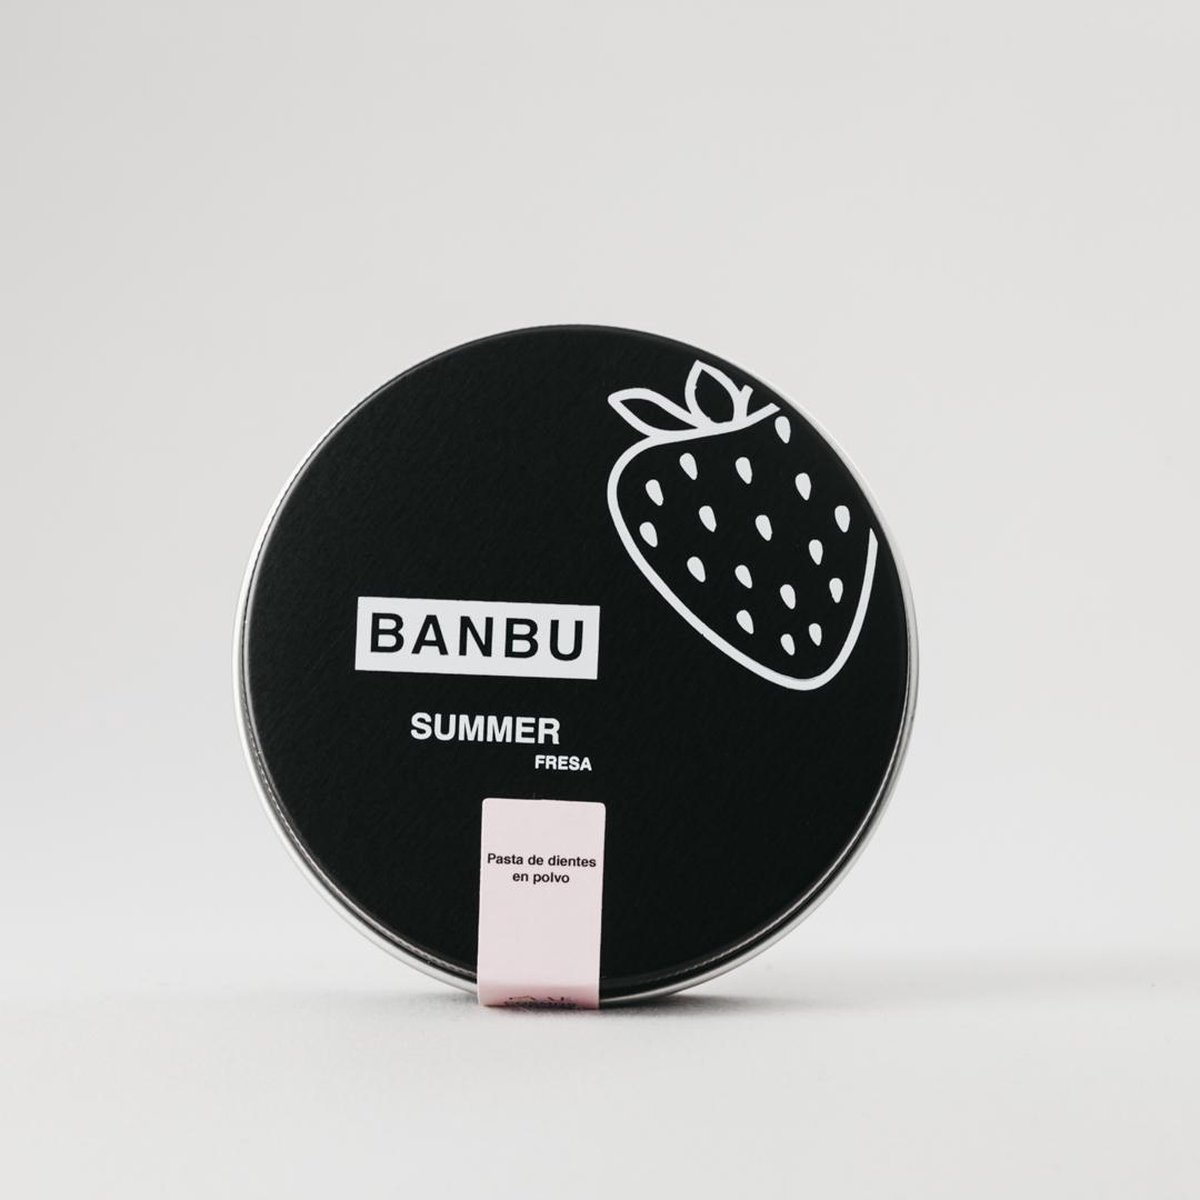 Banbu Tandpasta poeder Summer - Strawberry smaak - blikvorm - zero waste